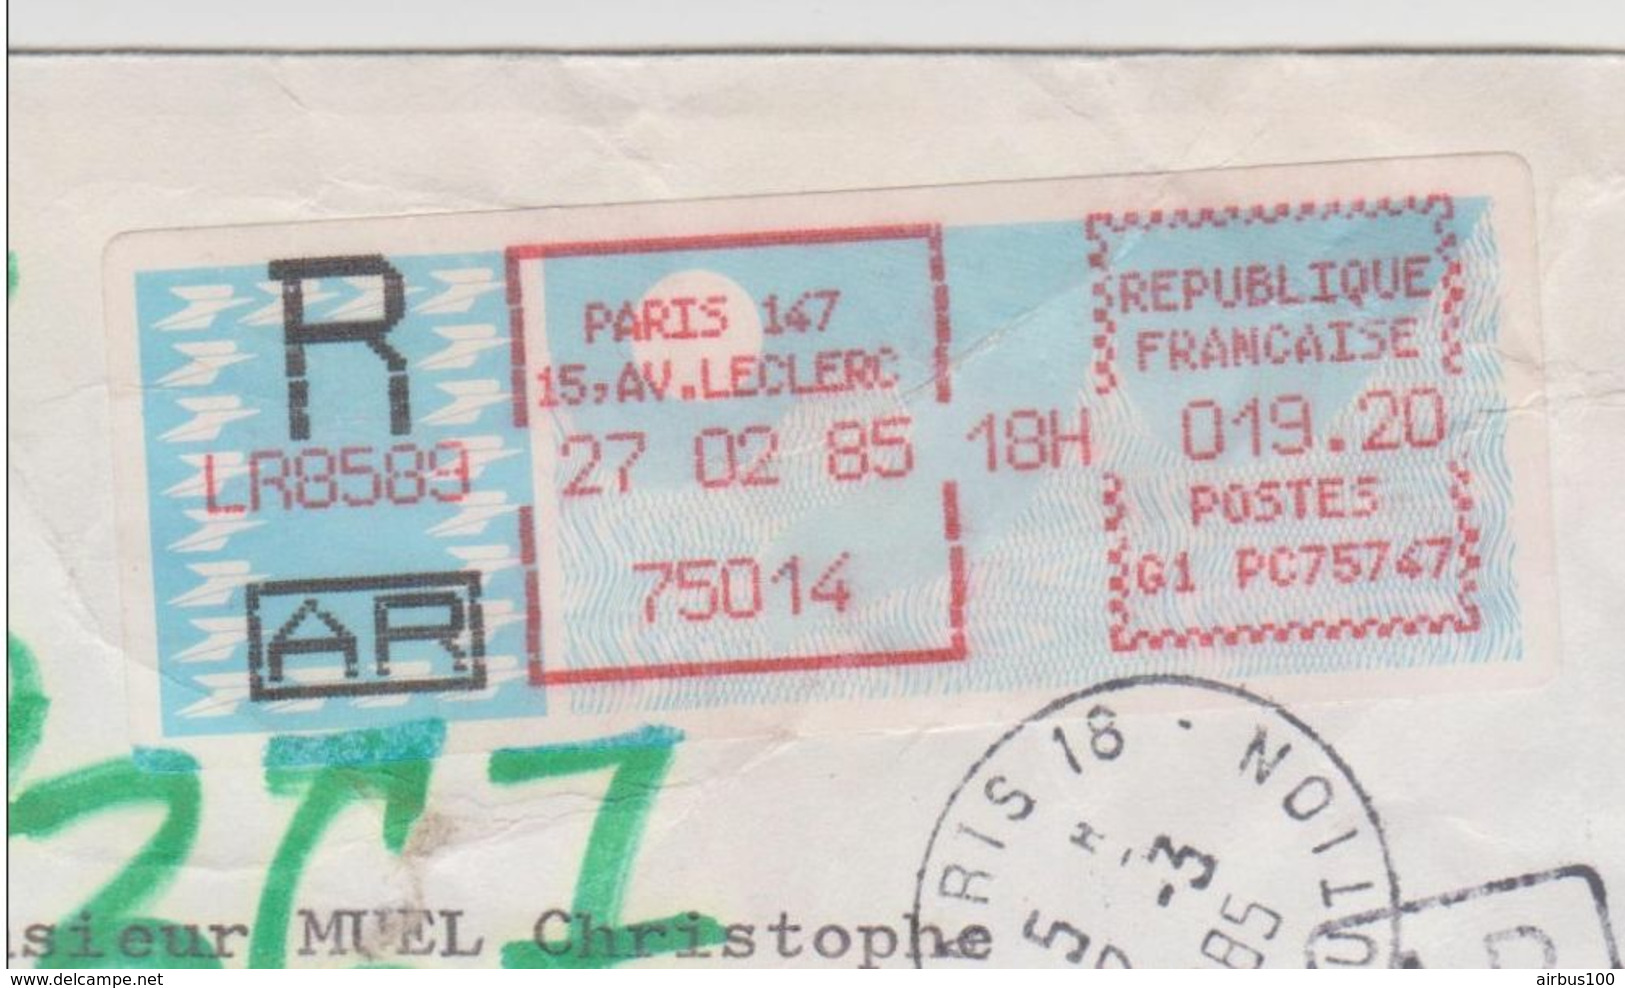 RECOMMANDÉ AR TIMBRE DE DISTRIBUTEUR PARIS 75747 CARRIER PARIS 147 AV. LECLERC 27 FÉVRIER 1985 UTILISÉ A TITRE D'ESSAI - 1985 « Carrier » Paper